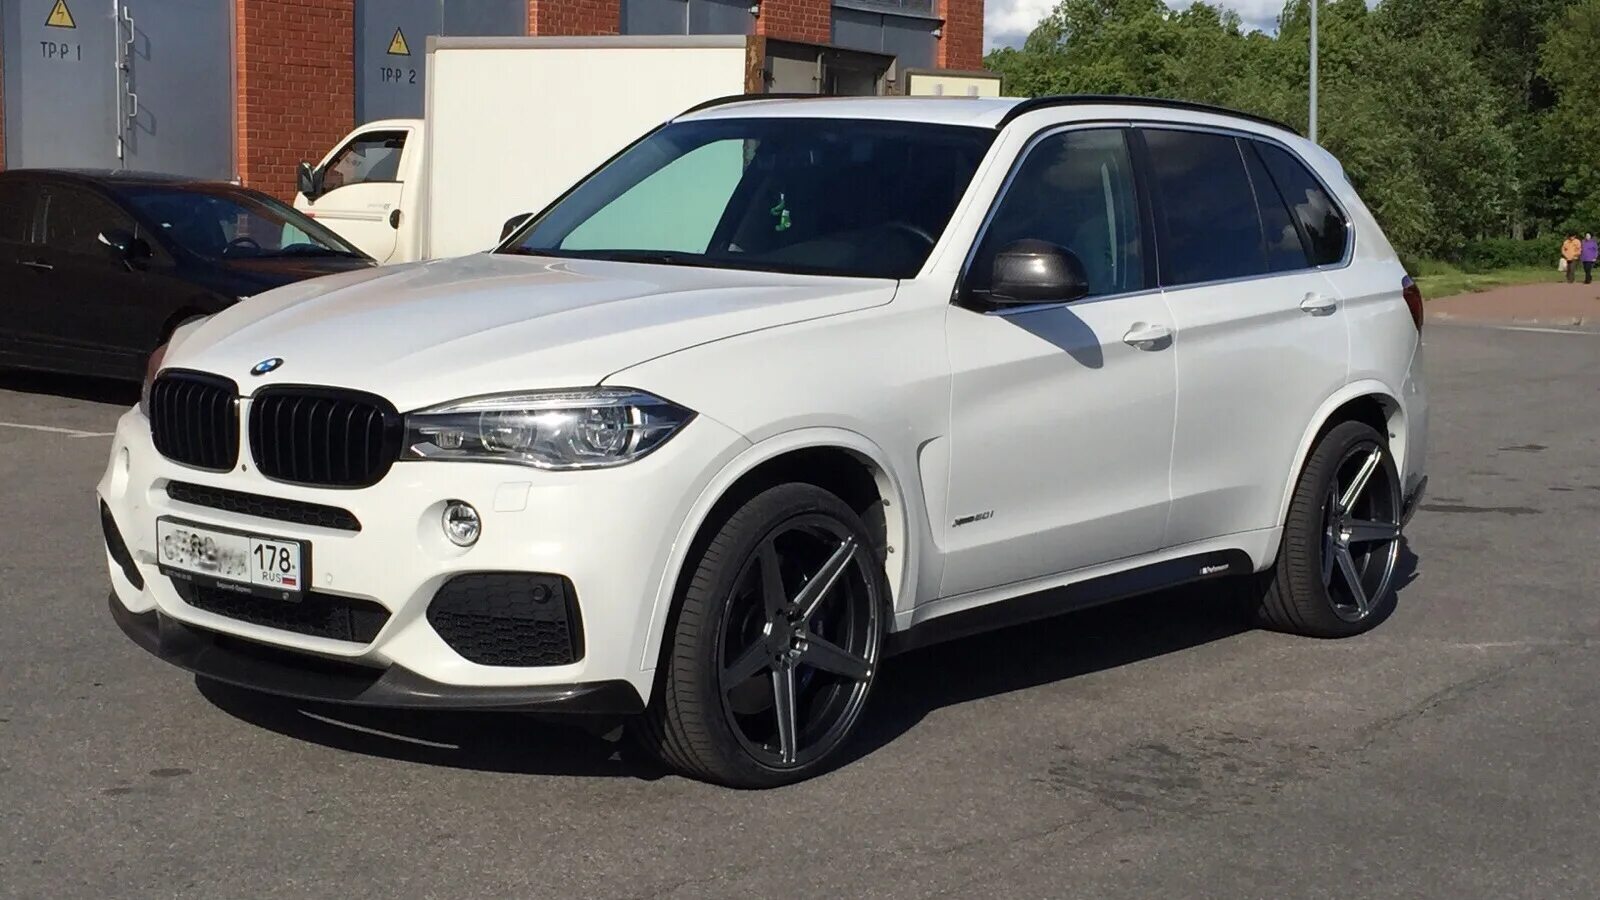 BMW x5 f15 белый. BMW x5 f15 м пакет. BMW x5 f15 r22. БМВ х5 2015 белый. X 5 0.5 x 1